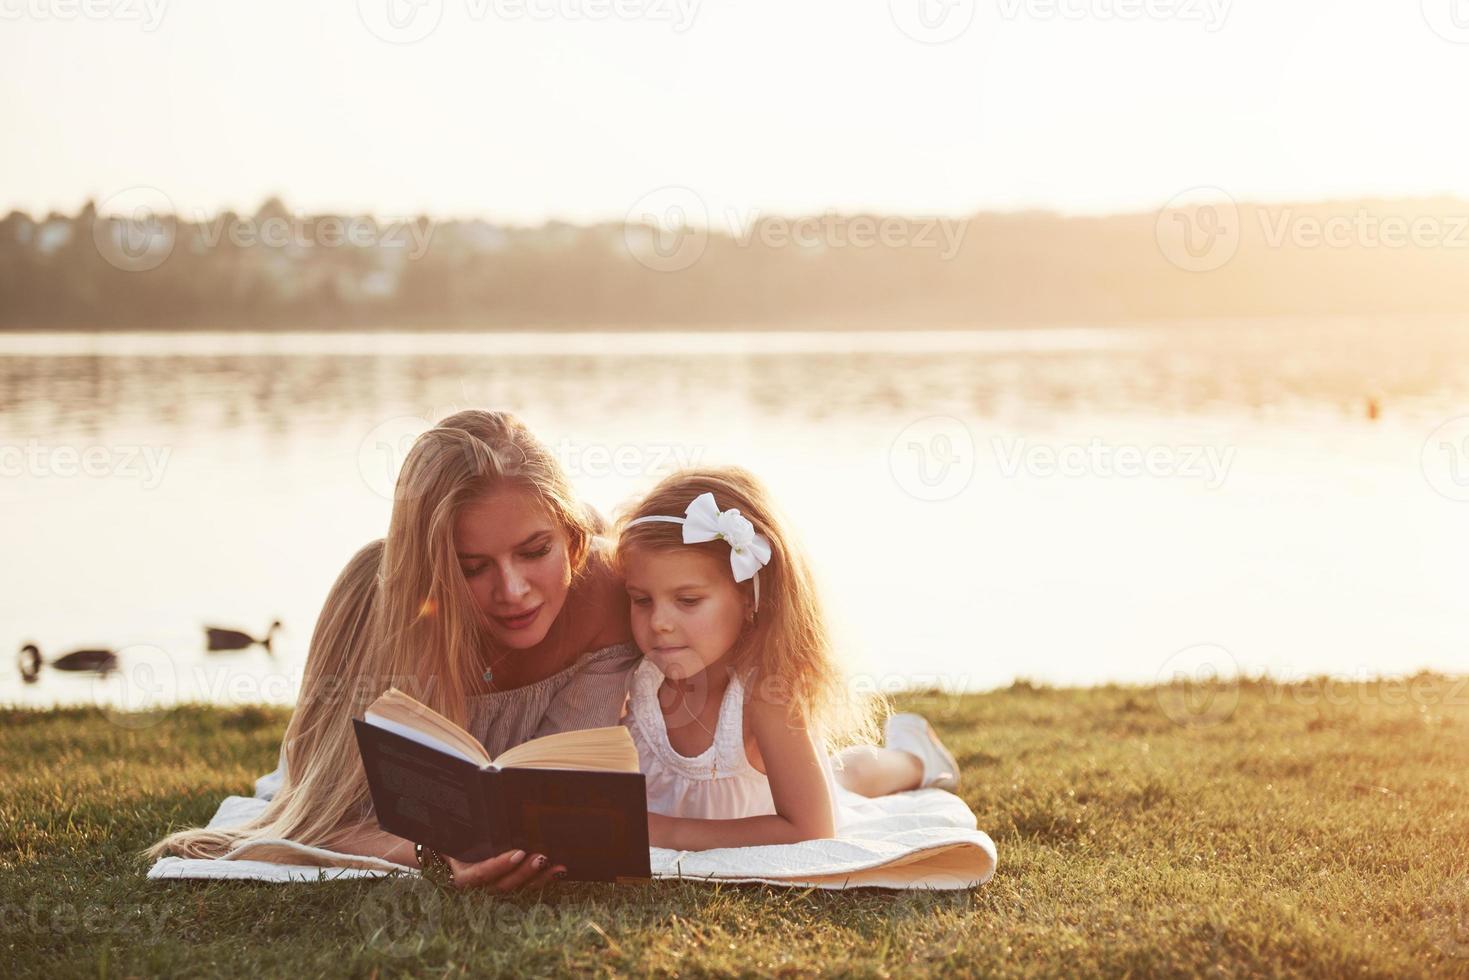 mamma med ett barn läser en bok på gräset foto